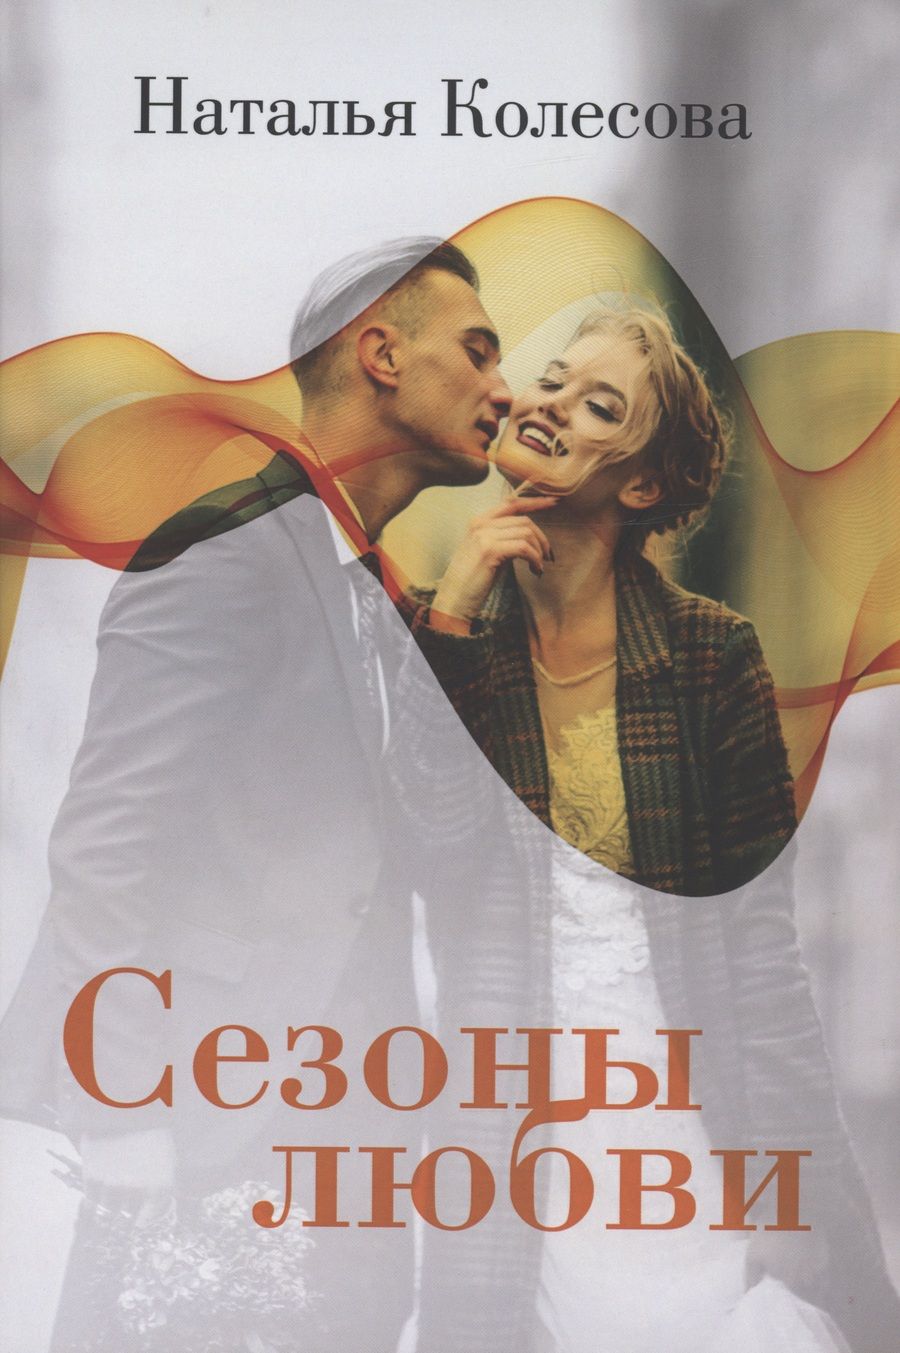 Обложка книги "Колесова: Сезоны любви"